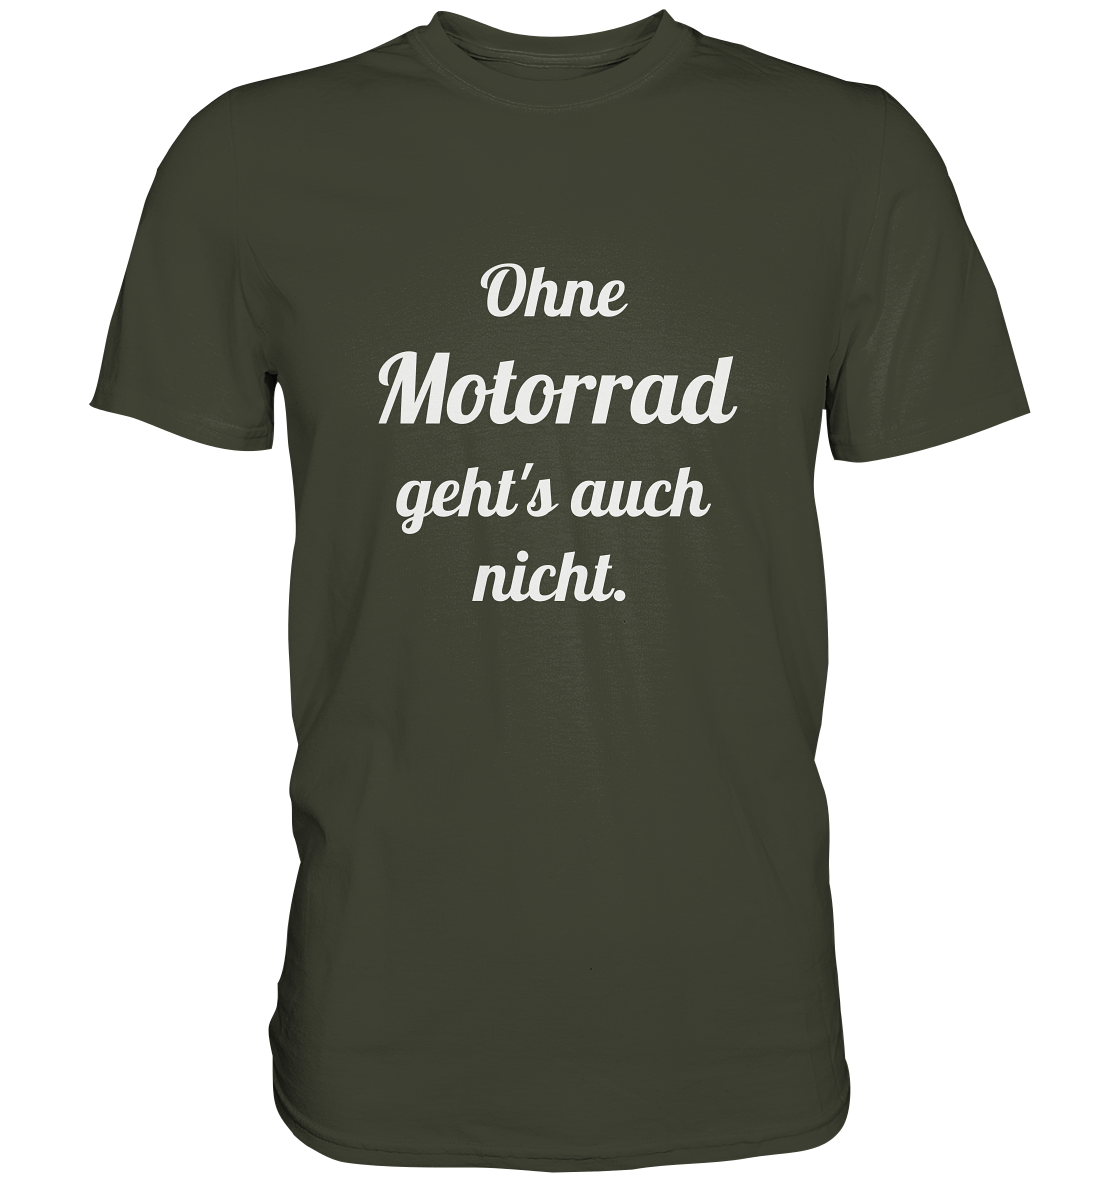 Herren-T-Shirt, Rundhals mit Aufdruck "Ohne Motorrad geht's auch nicht", khaki, oliv